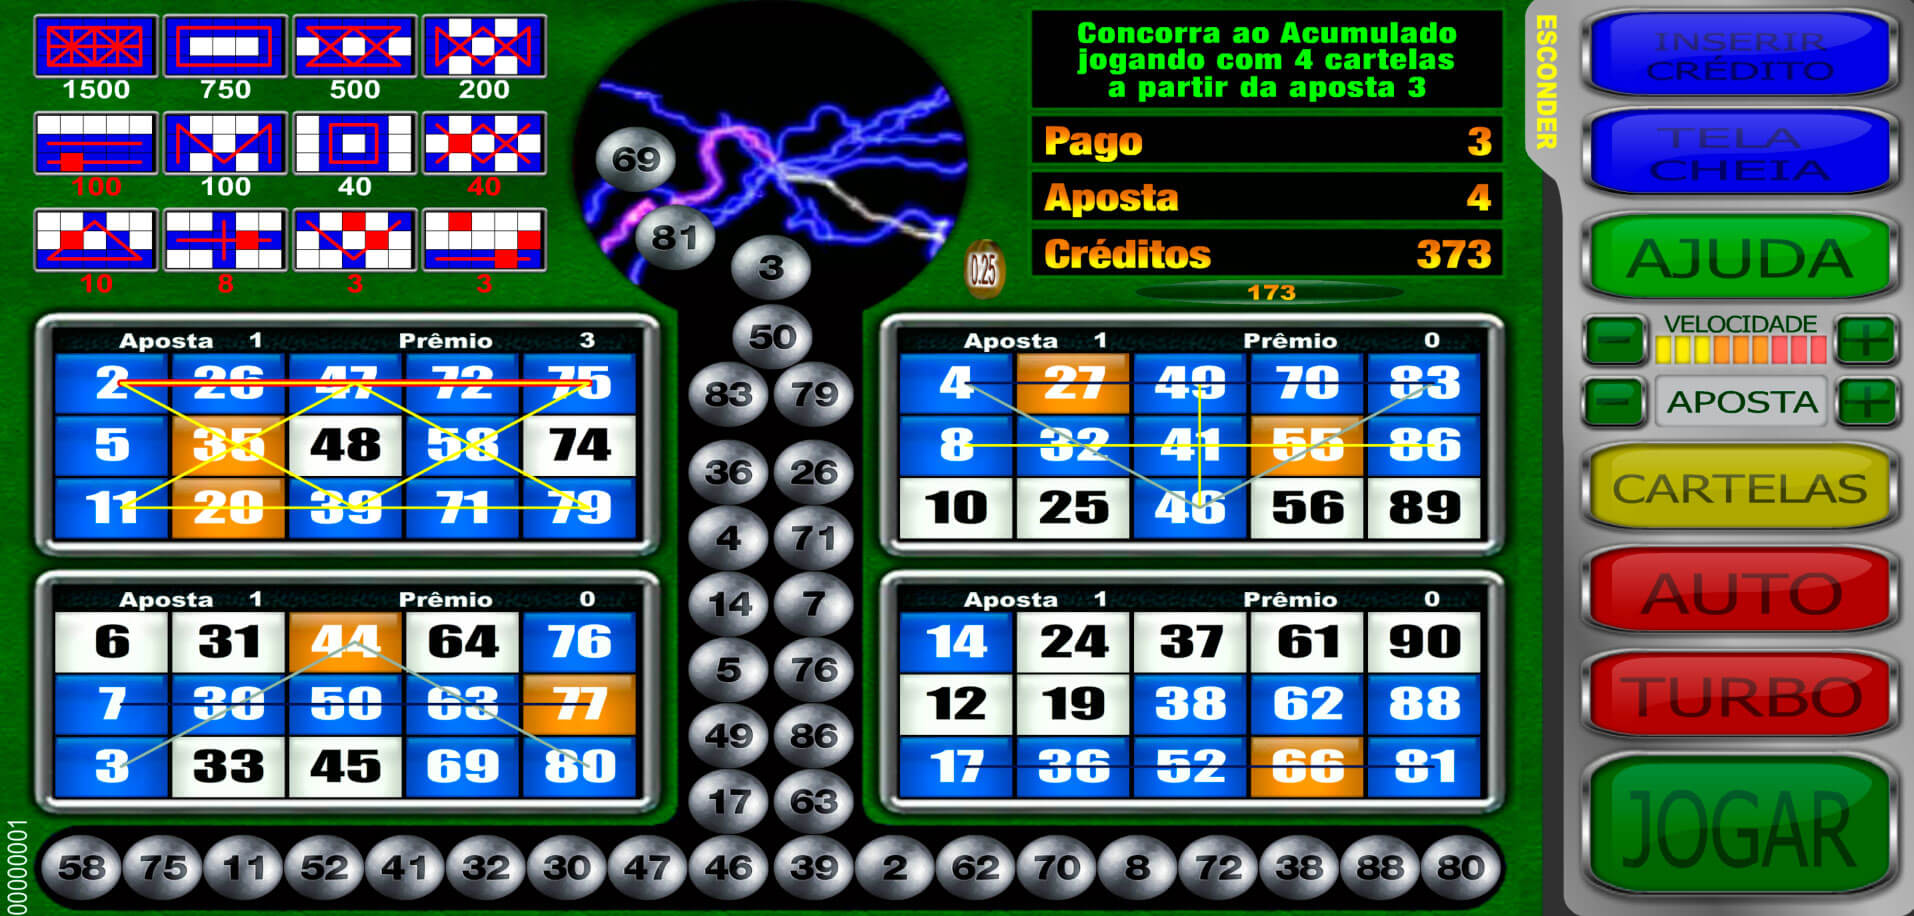 Motörhead casino Brasil silverball 66012